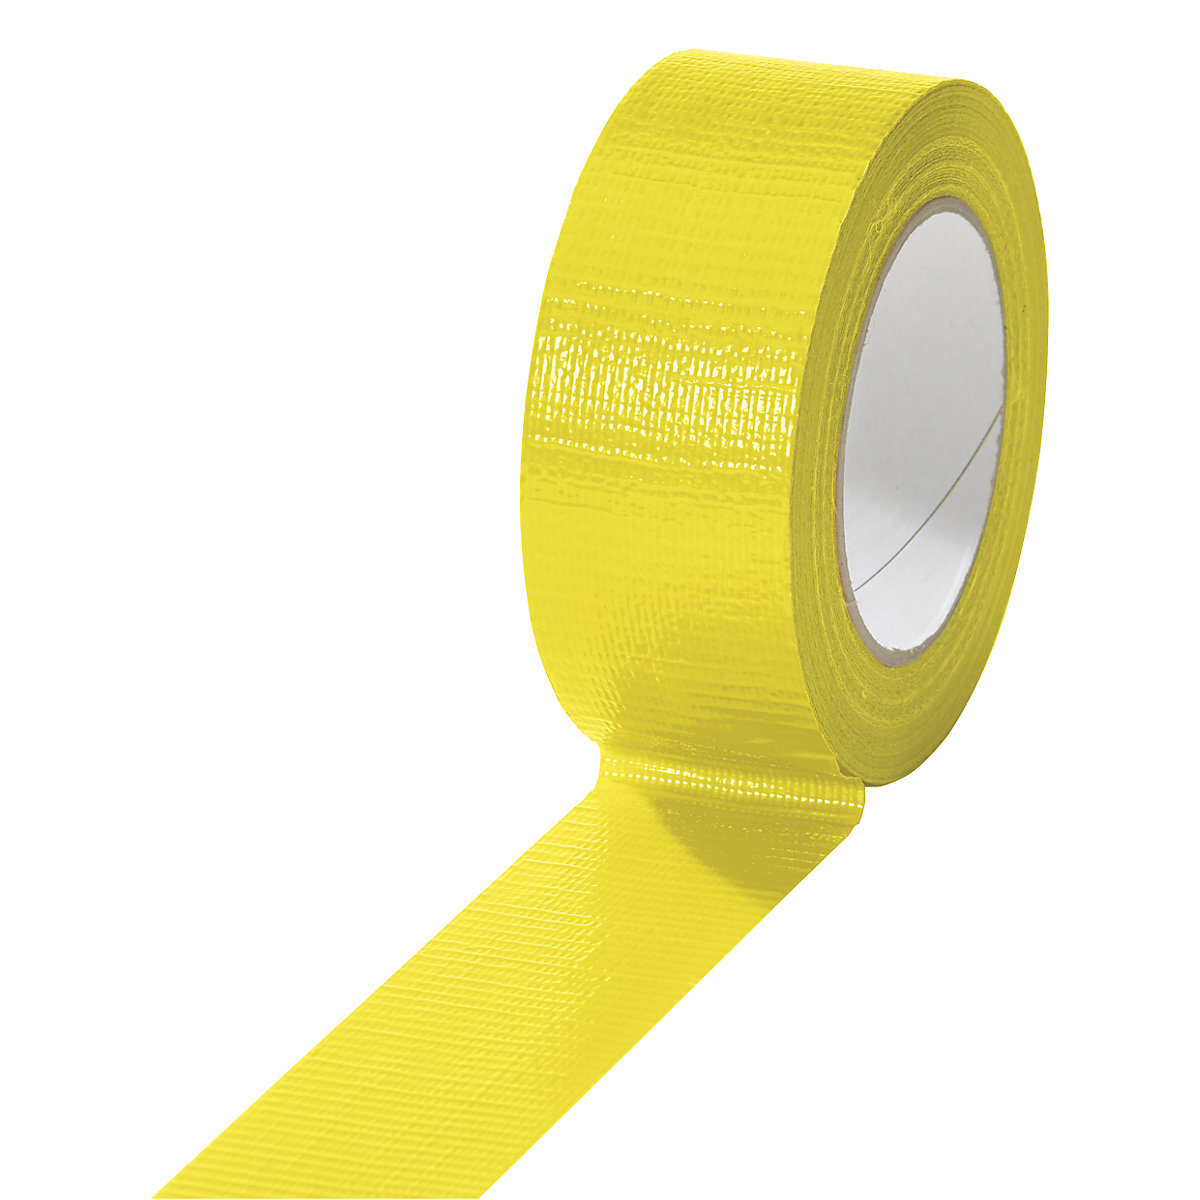 Traka od tkanine, u različitim bojama, pak. 24 role, u žutoj boji, širina trake 38 mm